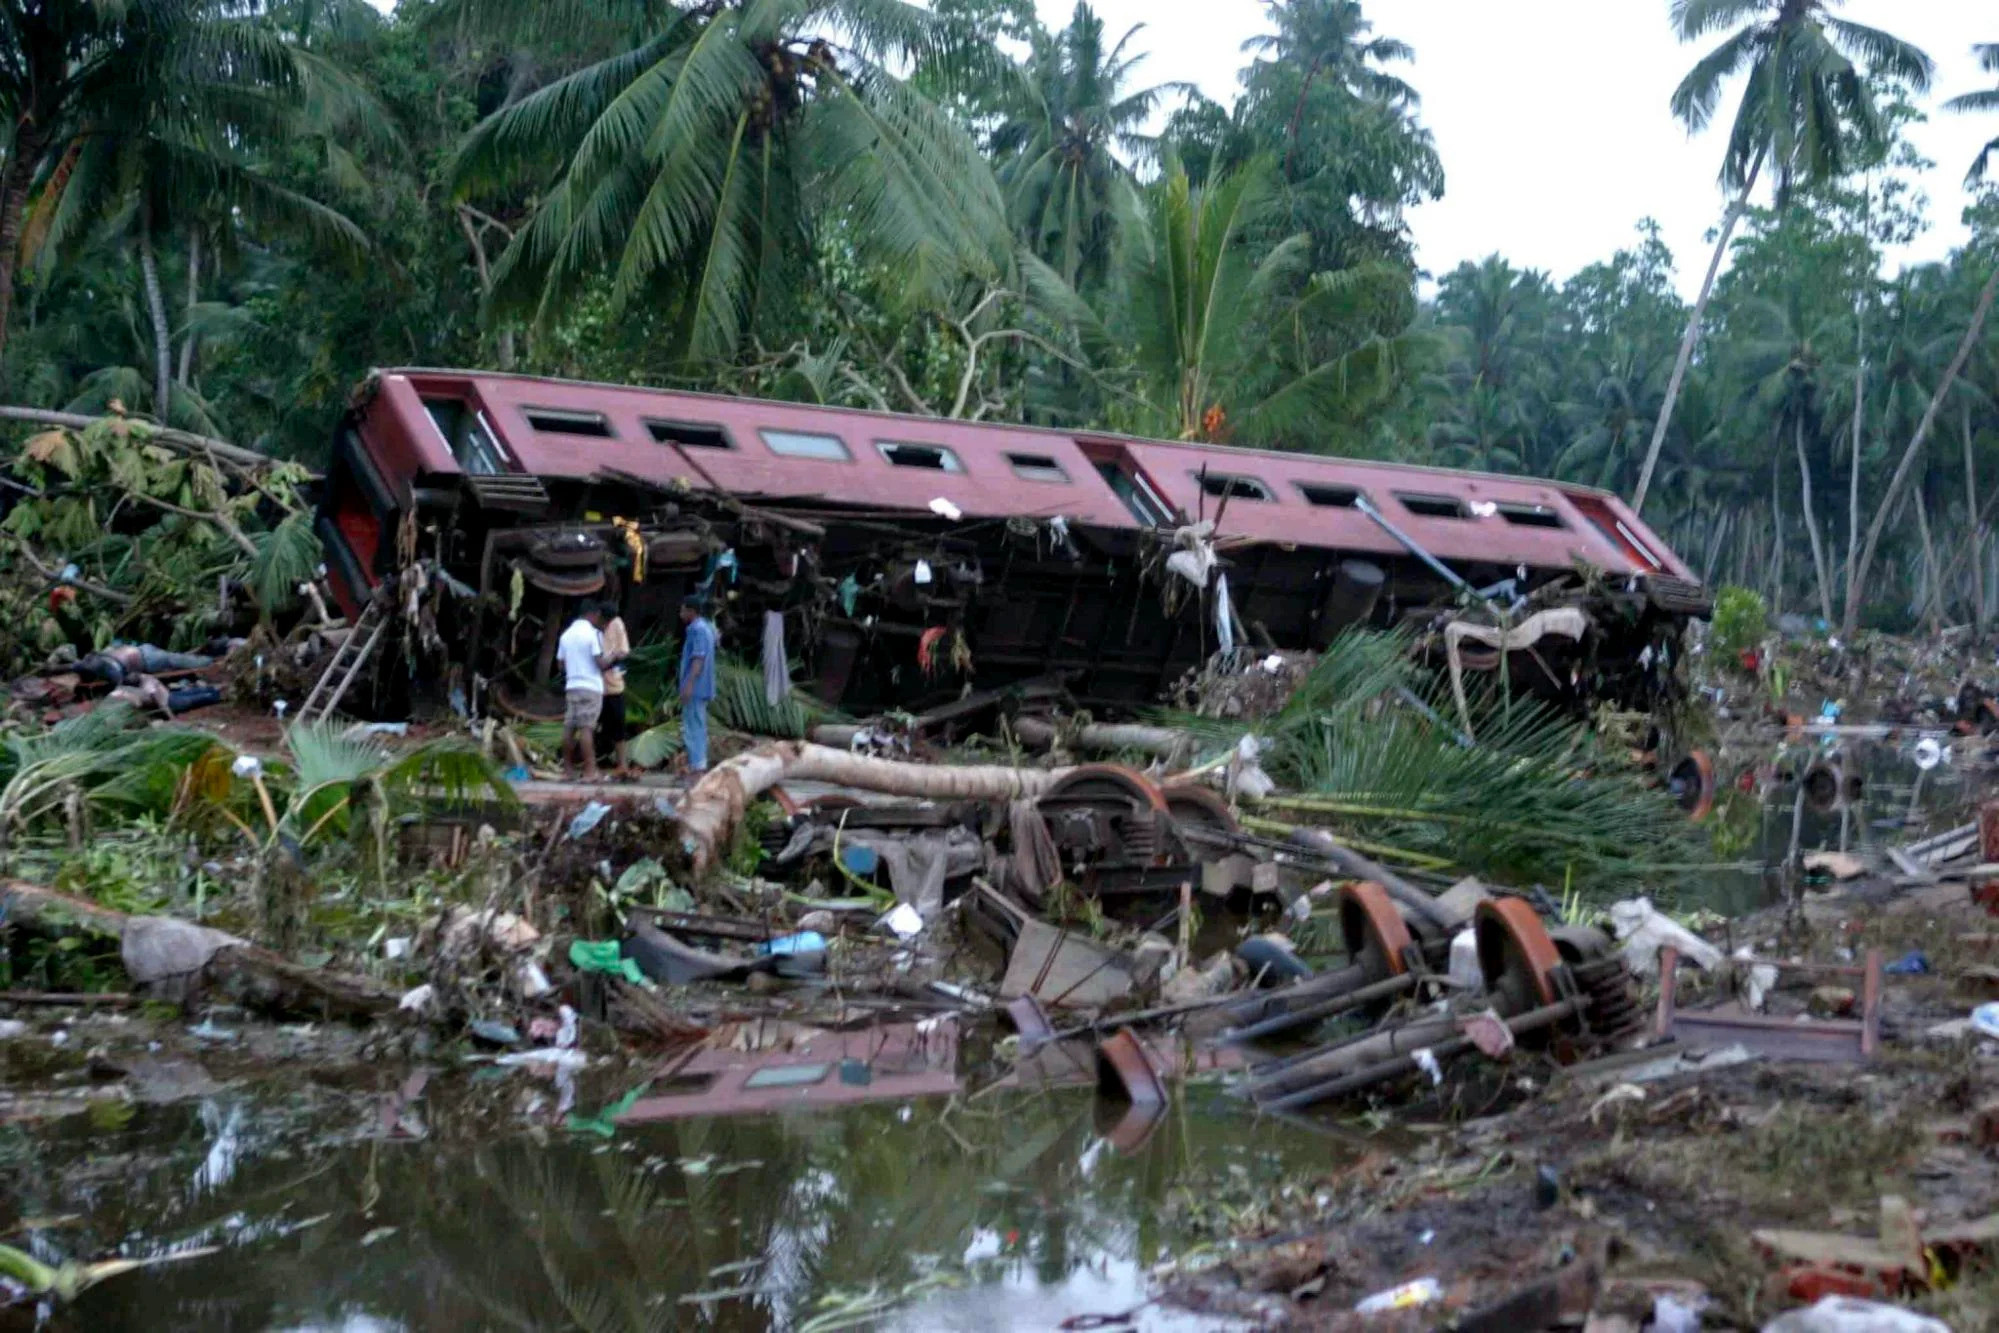 8 декабря 2004. Железнодорожная катастрофа и ЦУНАМИ В Шри-Ланке, 2004 год (1700+ жертв). Железнодорожная катастрофа и ЦУНАМИ В Шри-Ланке, 2004 год. ЖД катастрофа Шри Ланка 2004. ЦУНАМИ 2004 года Шри Ланка.